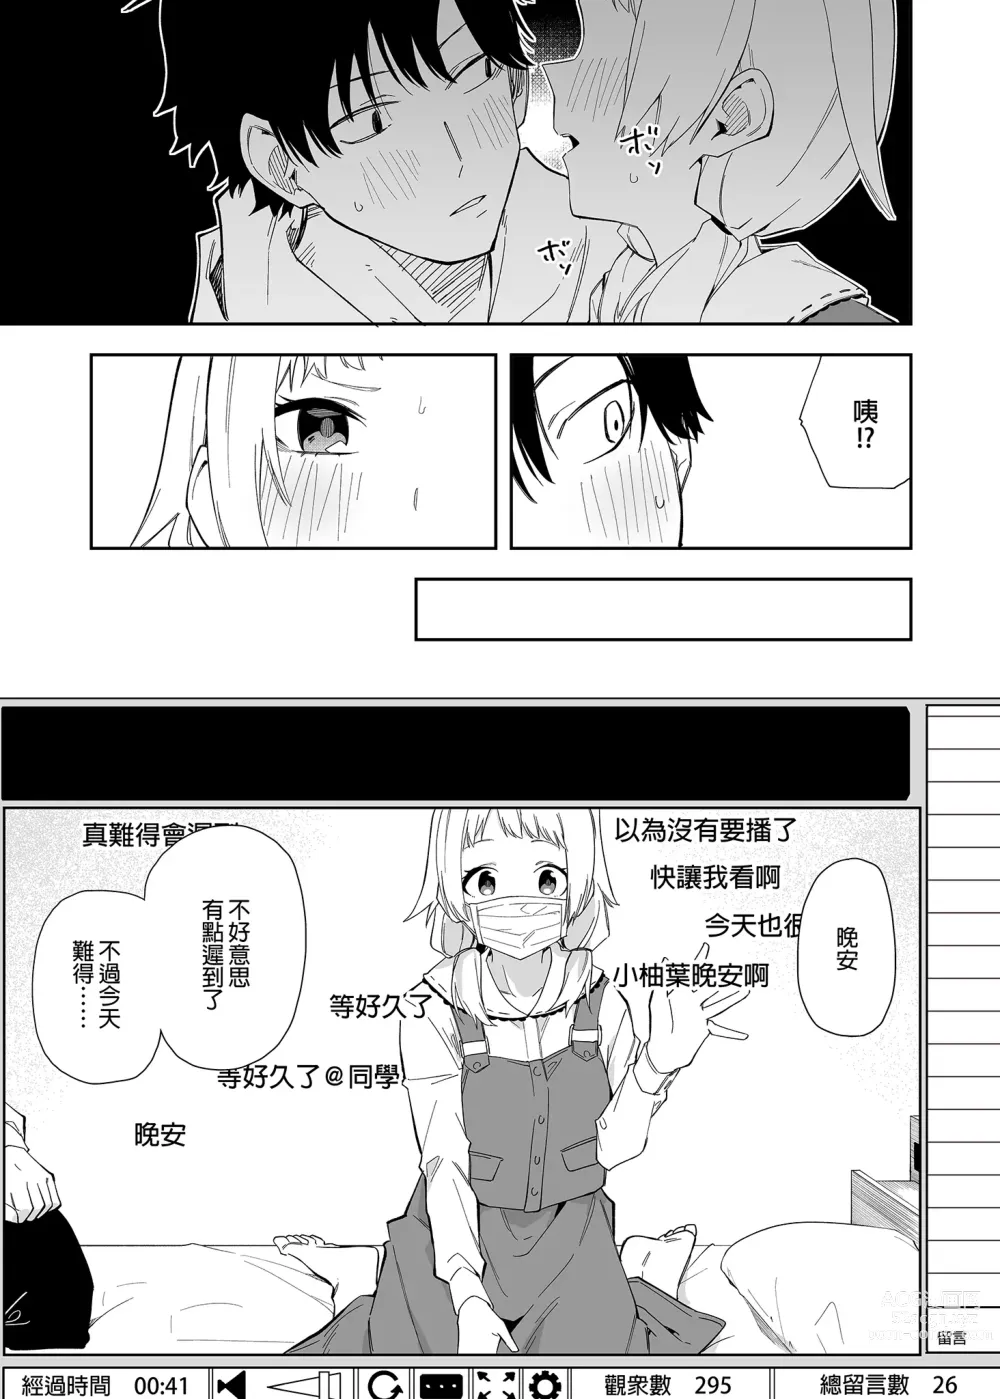 Page 13 of doujinshi 鄰居是有名的直播主 (decensored)